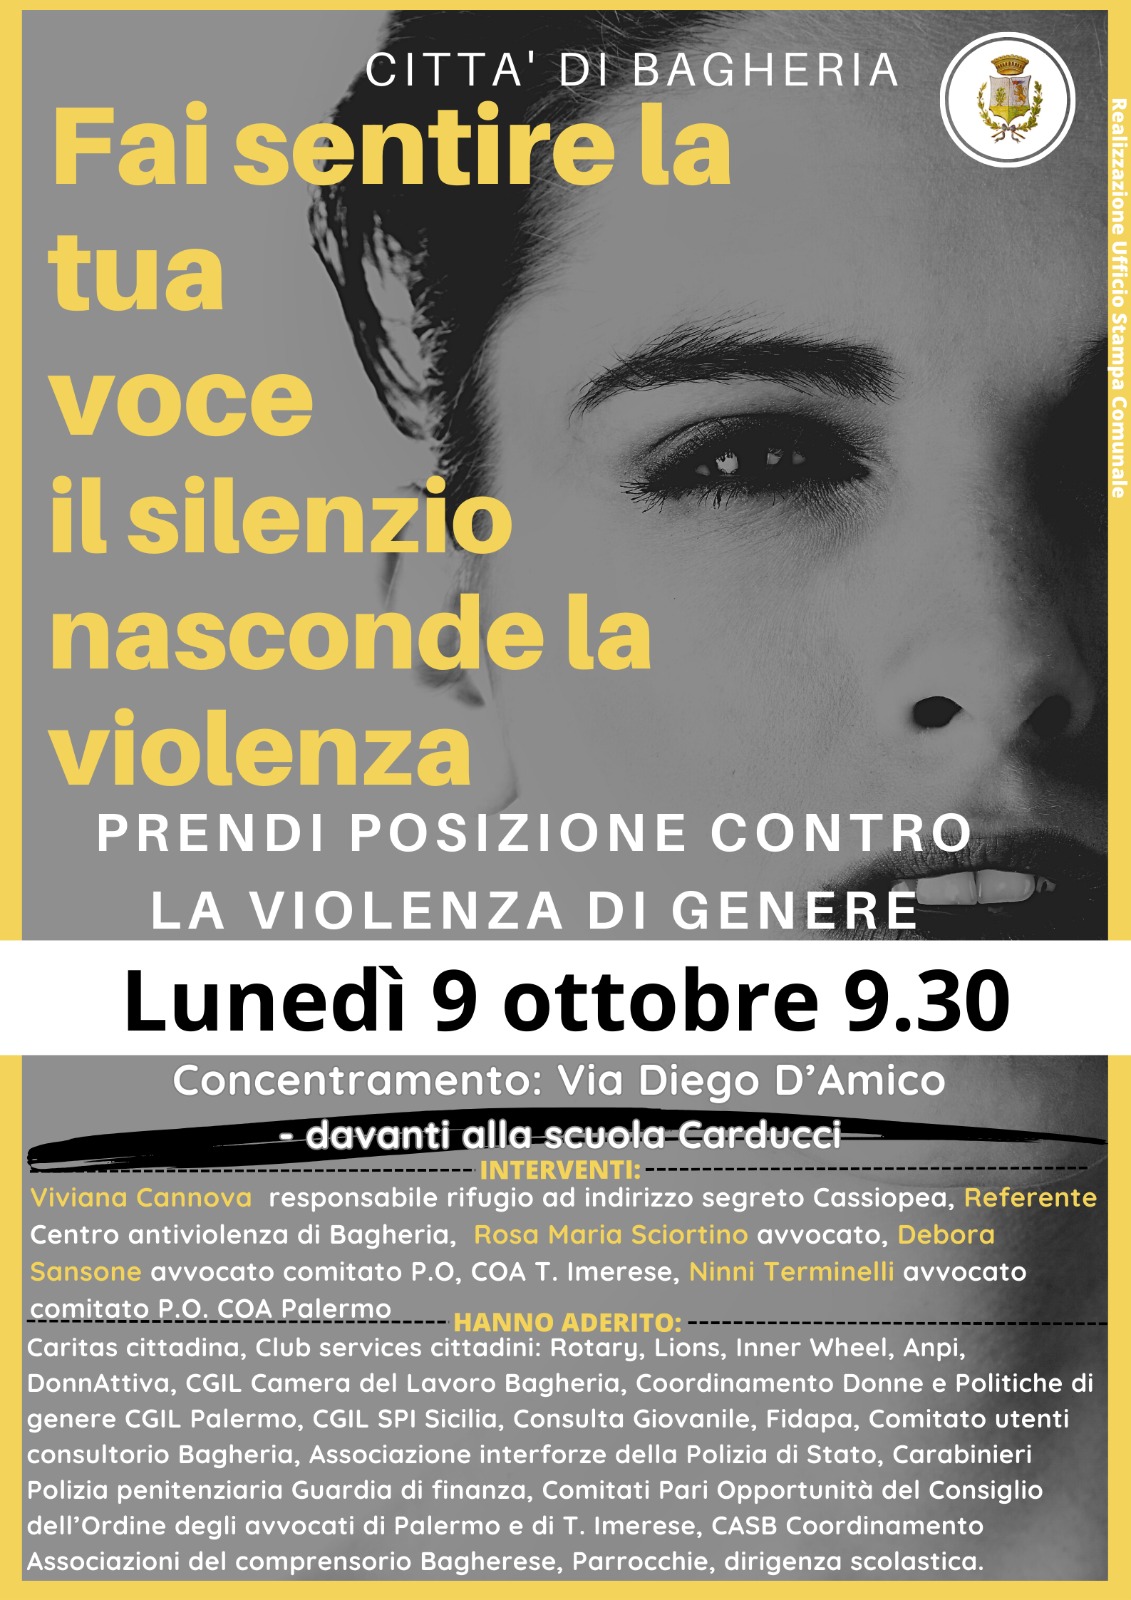 Manifestazione contro la violenza sulle donne: lunedì 9 ottobre 